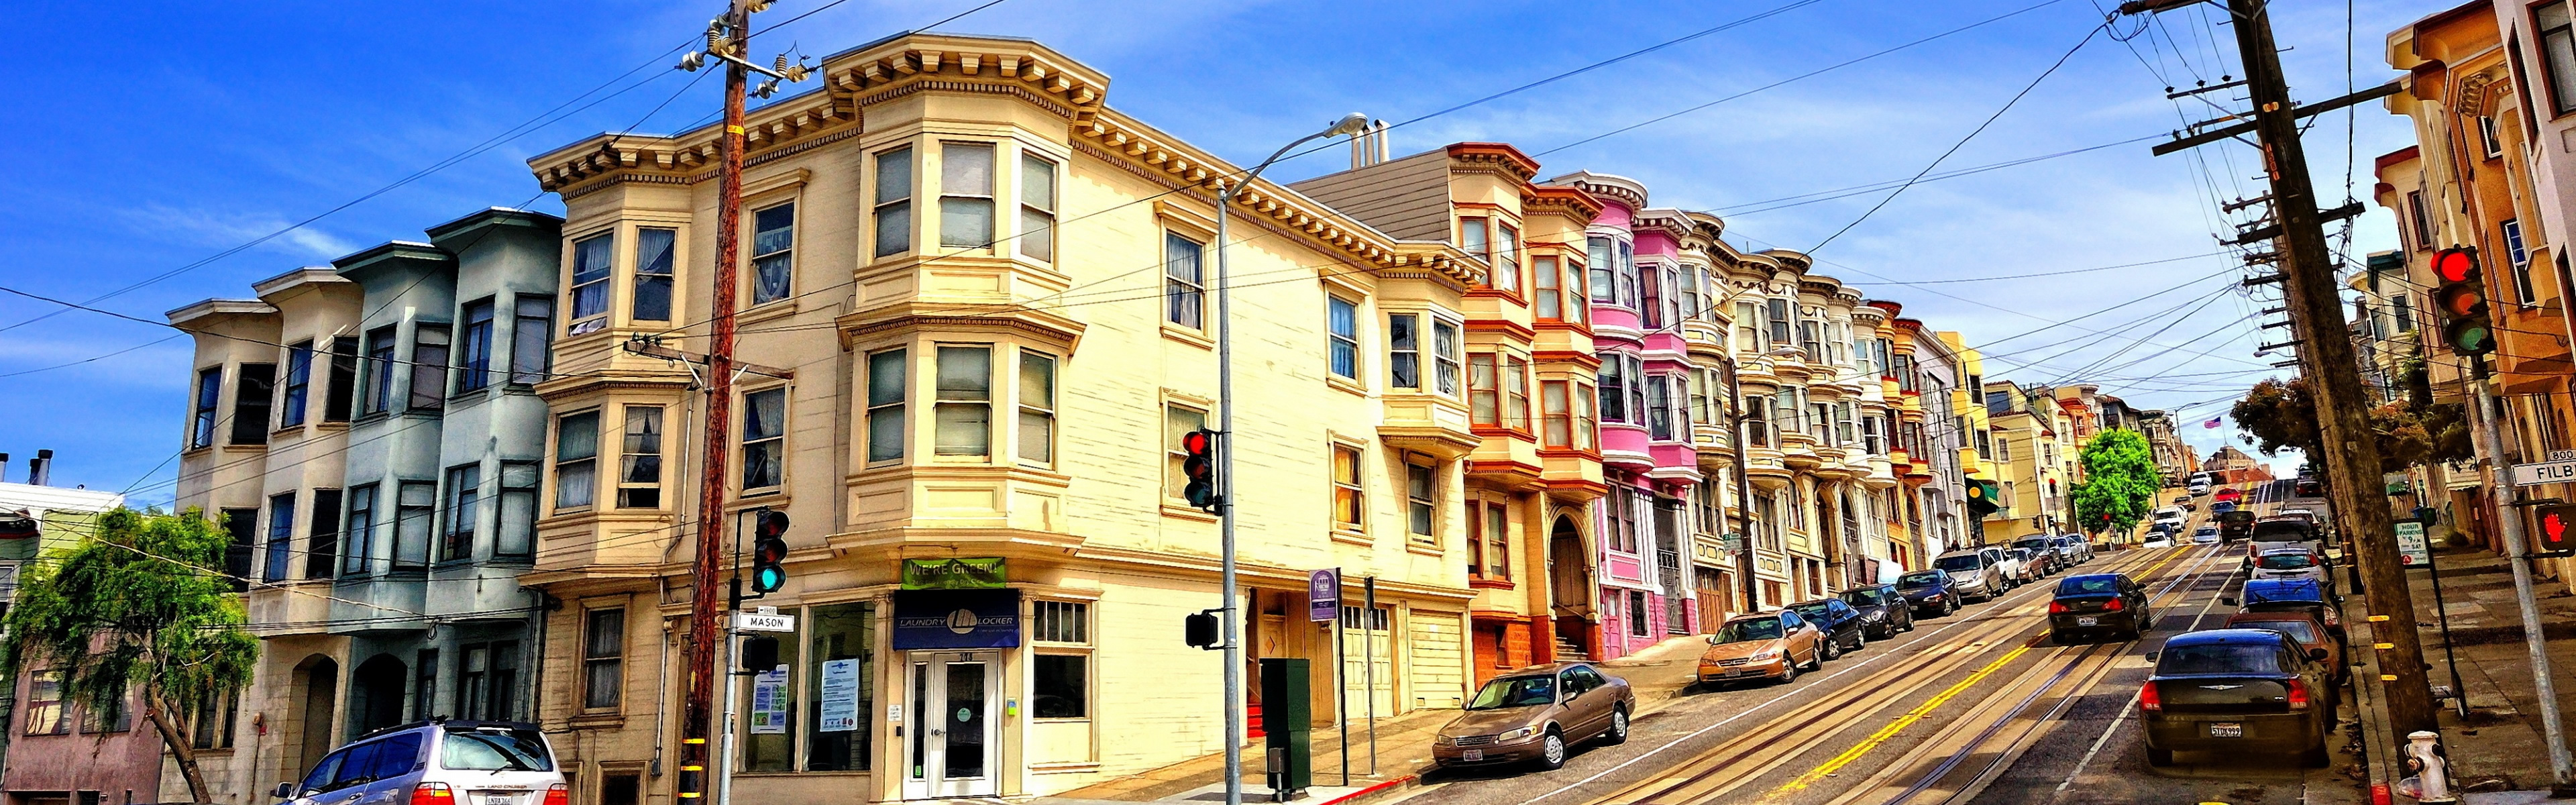 In San Francisco iPhone Panoramic Wallpaper iPad